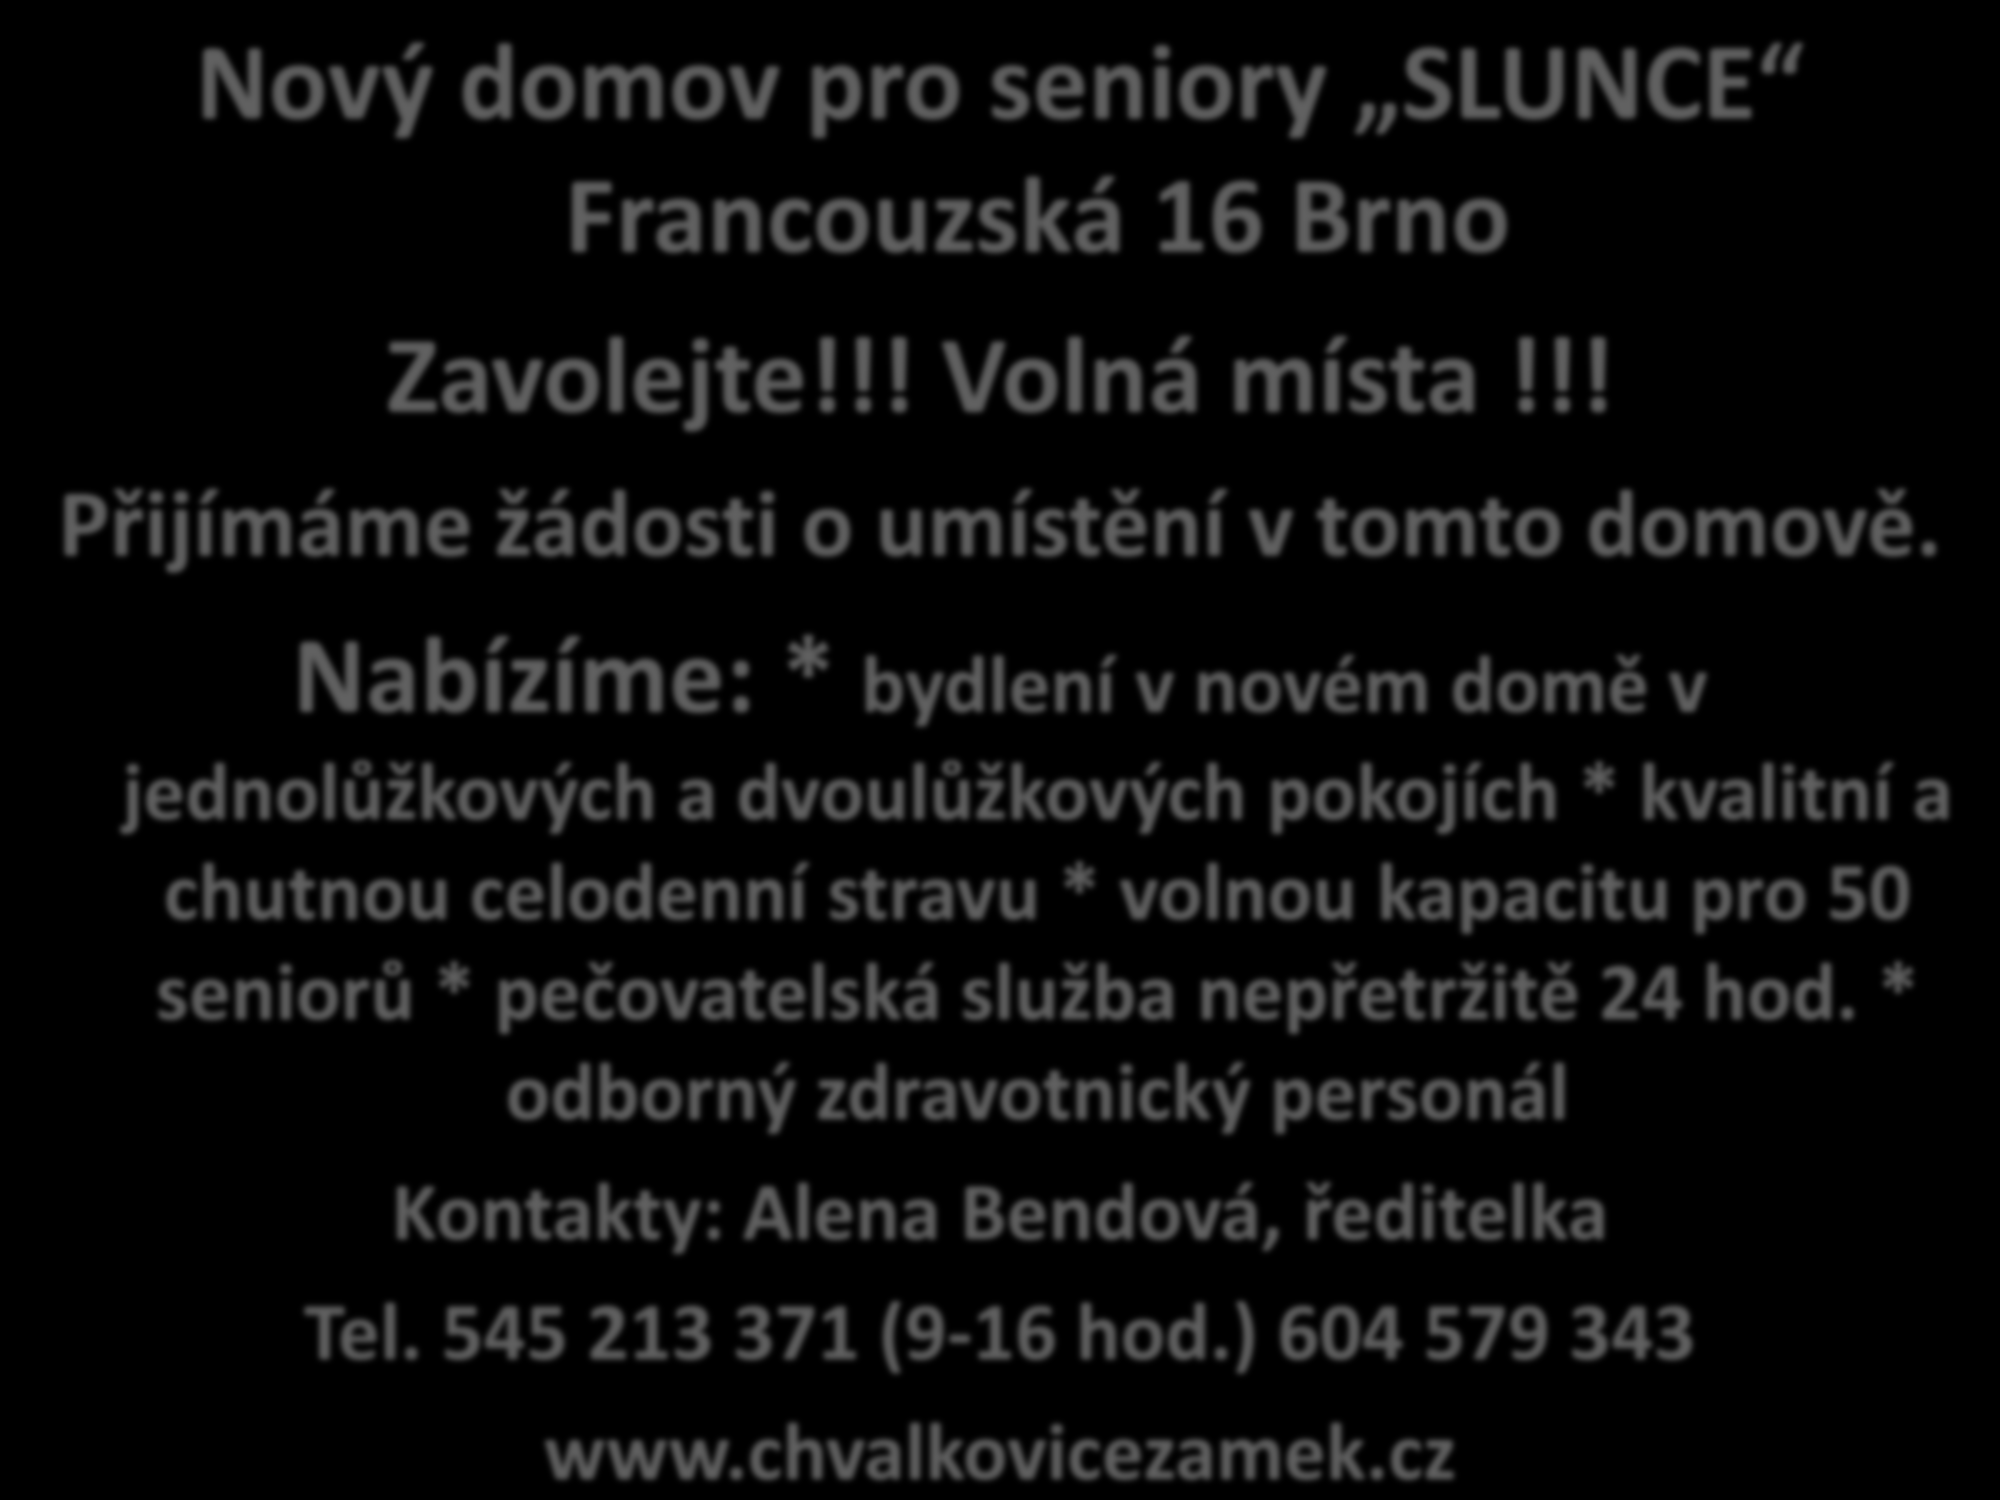 Nový domov pro seniory SLUNCE Francouzská 16 Brno Zavolejte!!! Volná místa!!! Přijímáme žádosti o umístění v tomto domově.